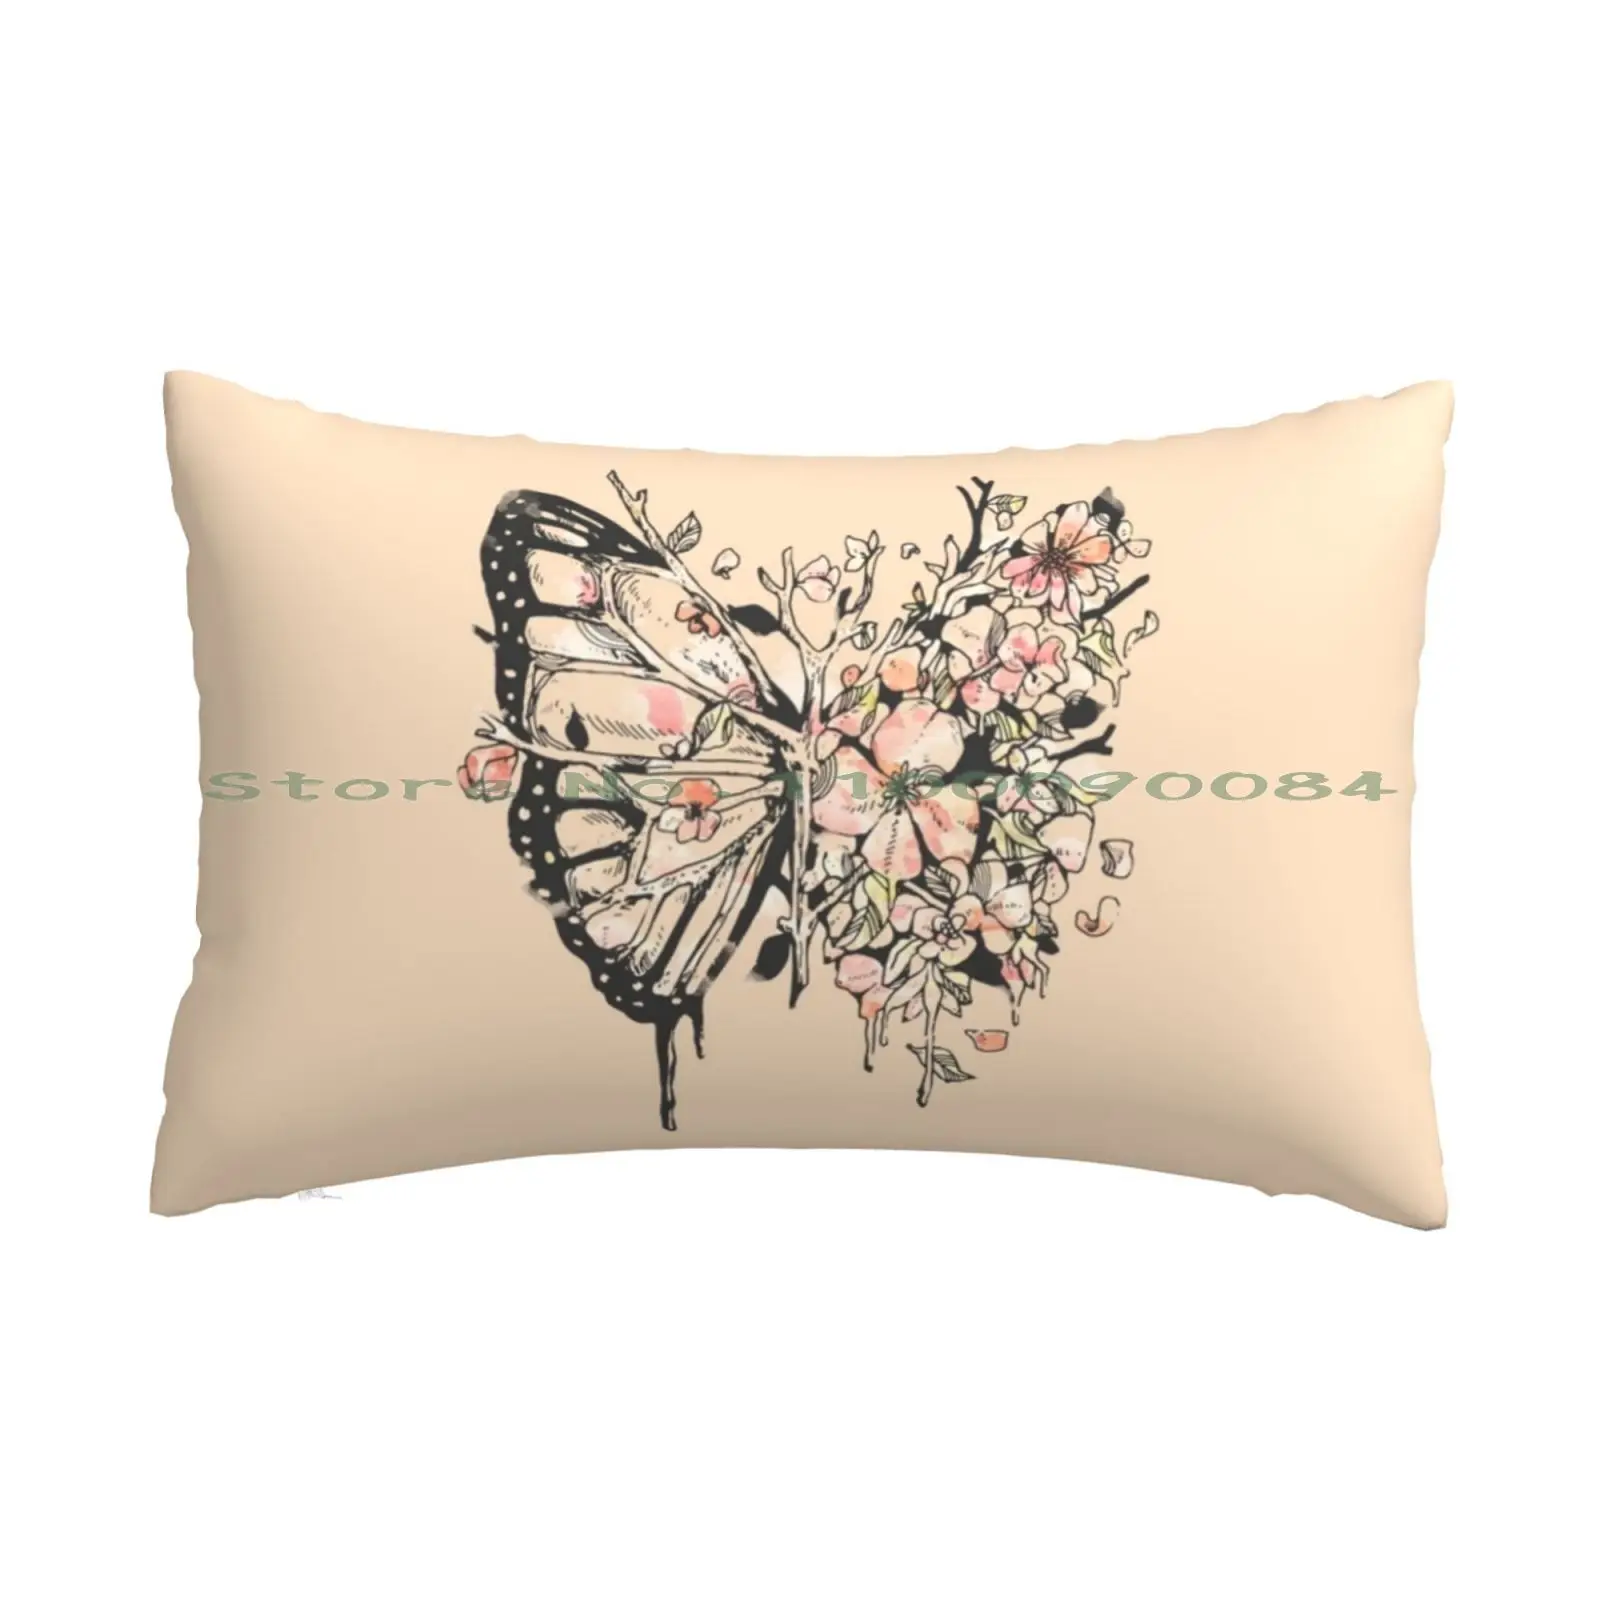 

Чехол Metamorphora для подушки, 20x30, 50*75, чехол для дивана, спальни, природные цветы, листья, флора, фауна, сюрреализм, акварельные ветви, жизнь